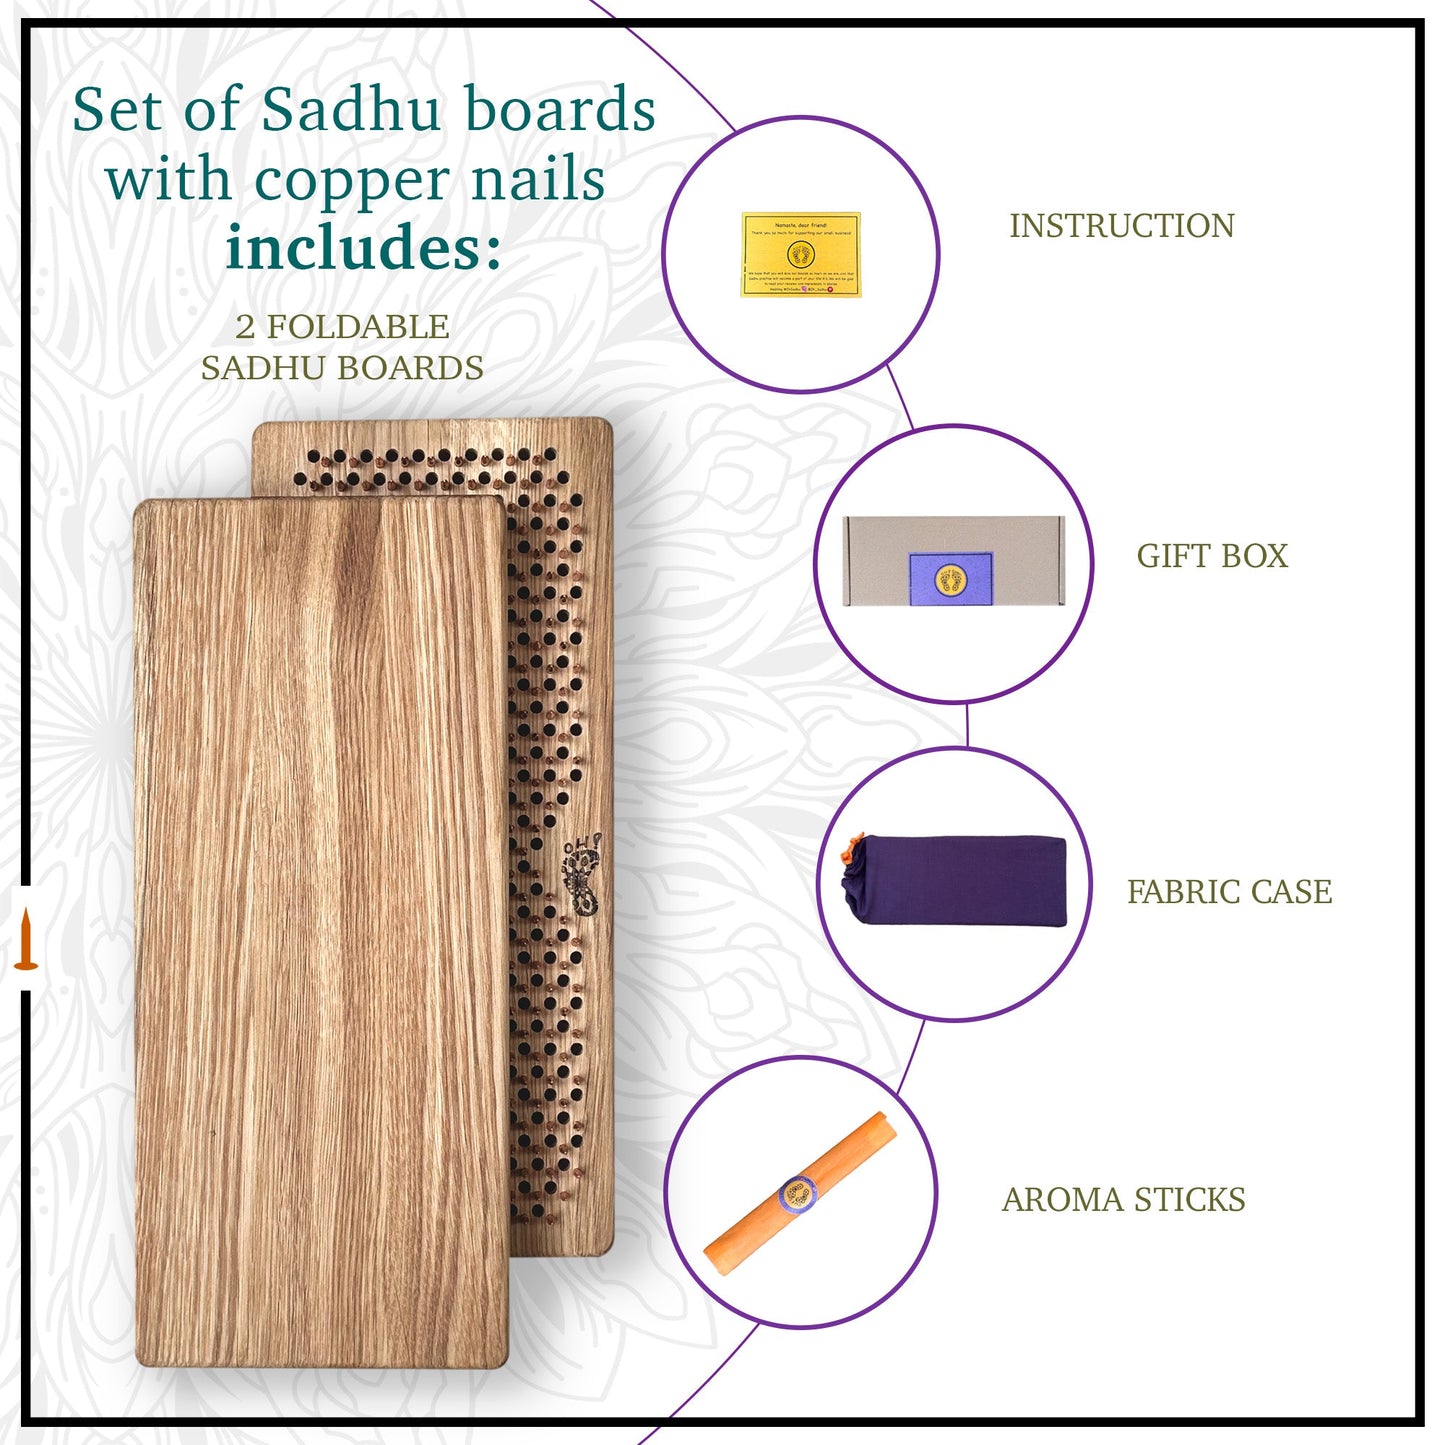 oak wood sadhu board with copper nails set